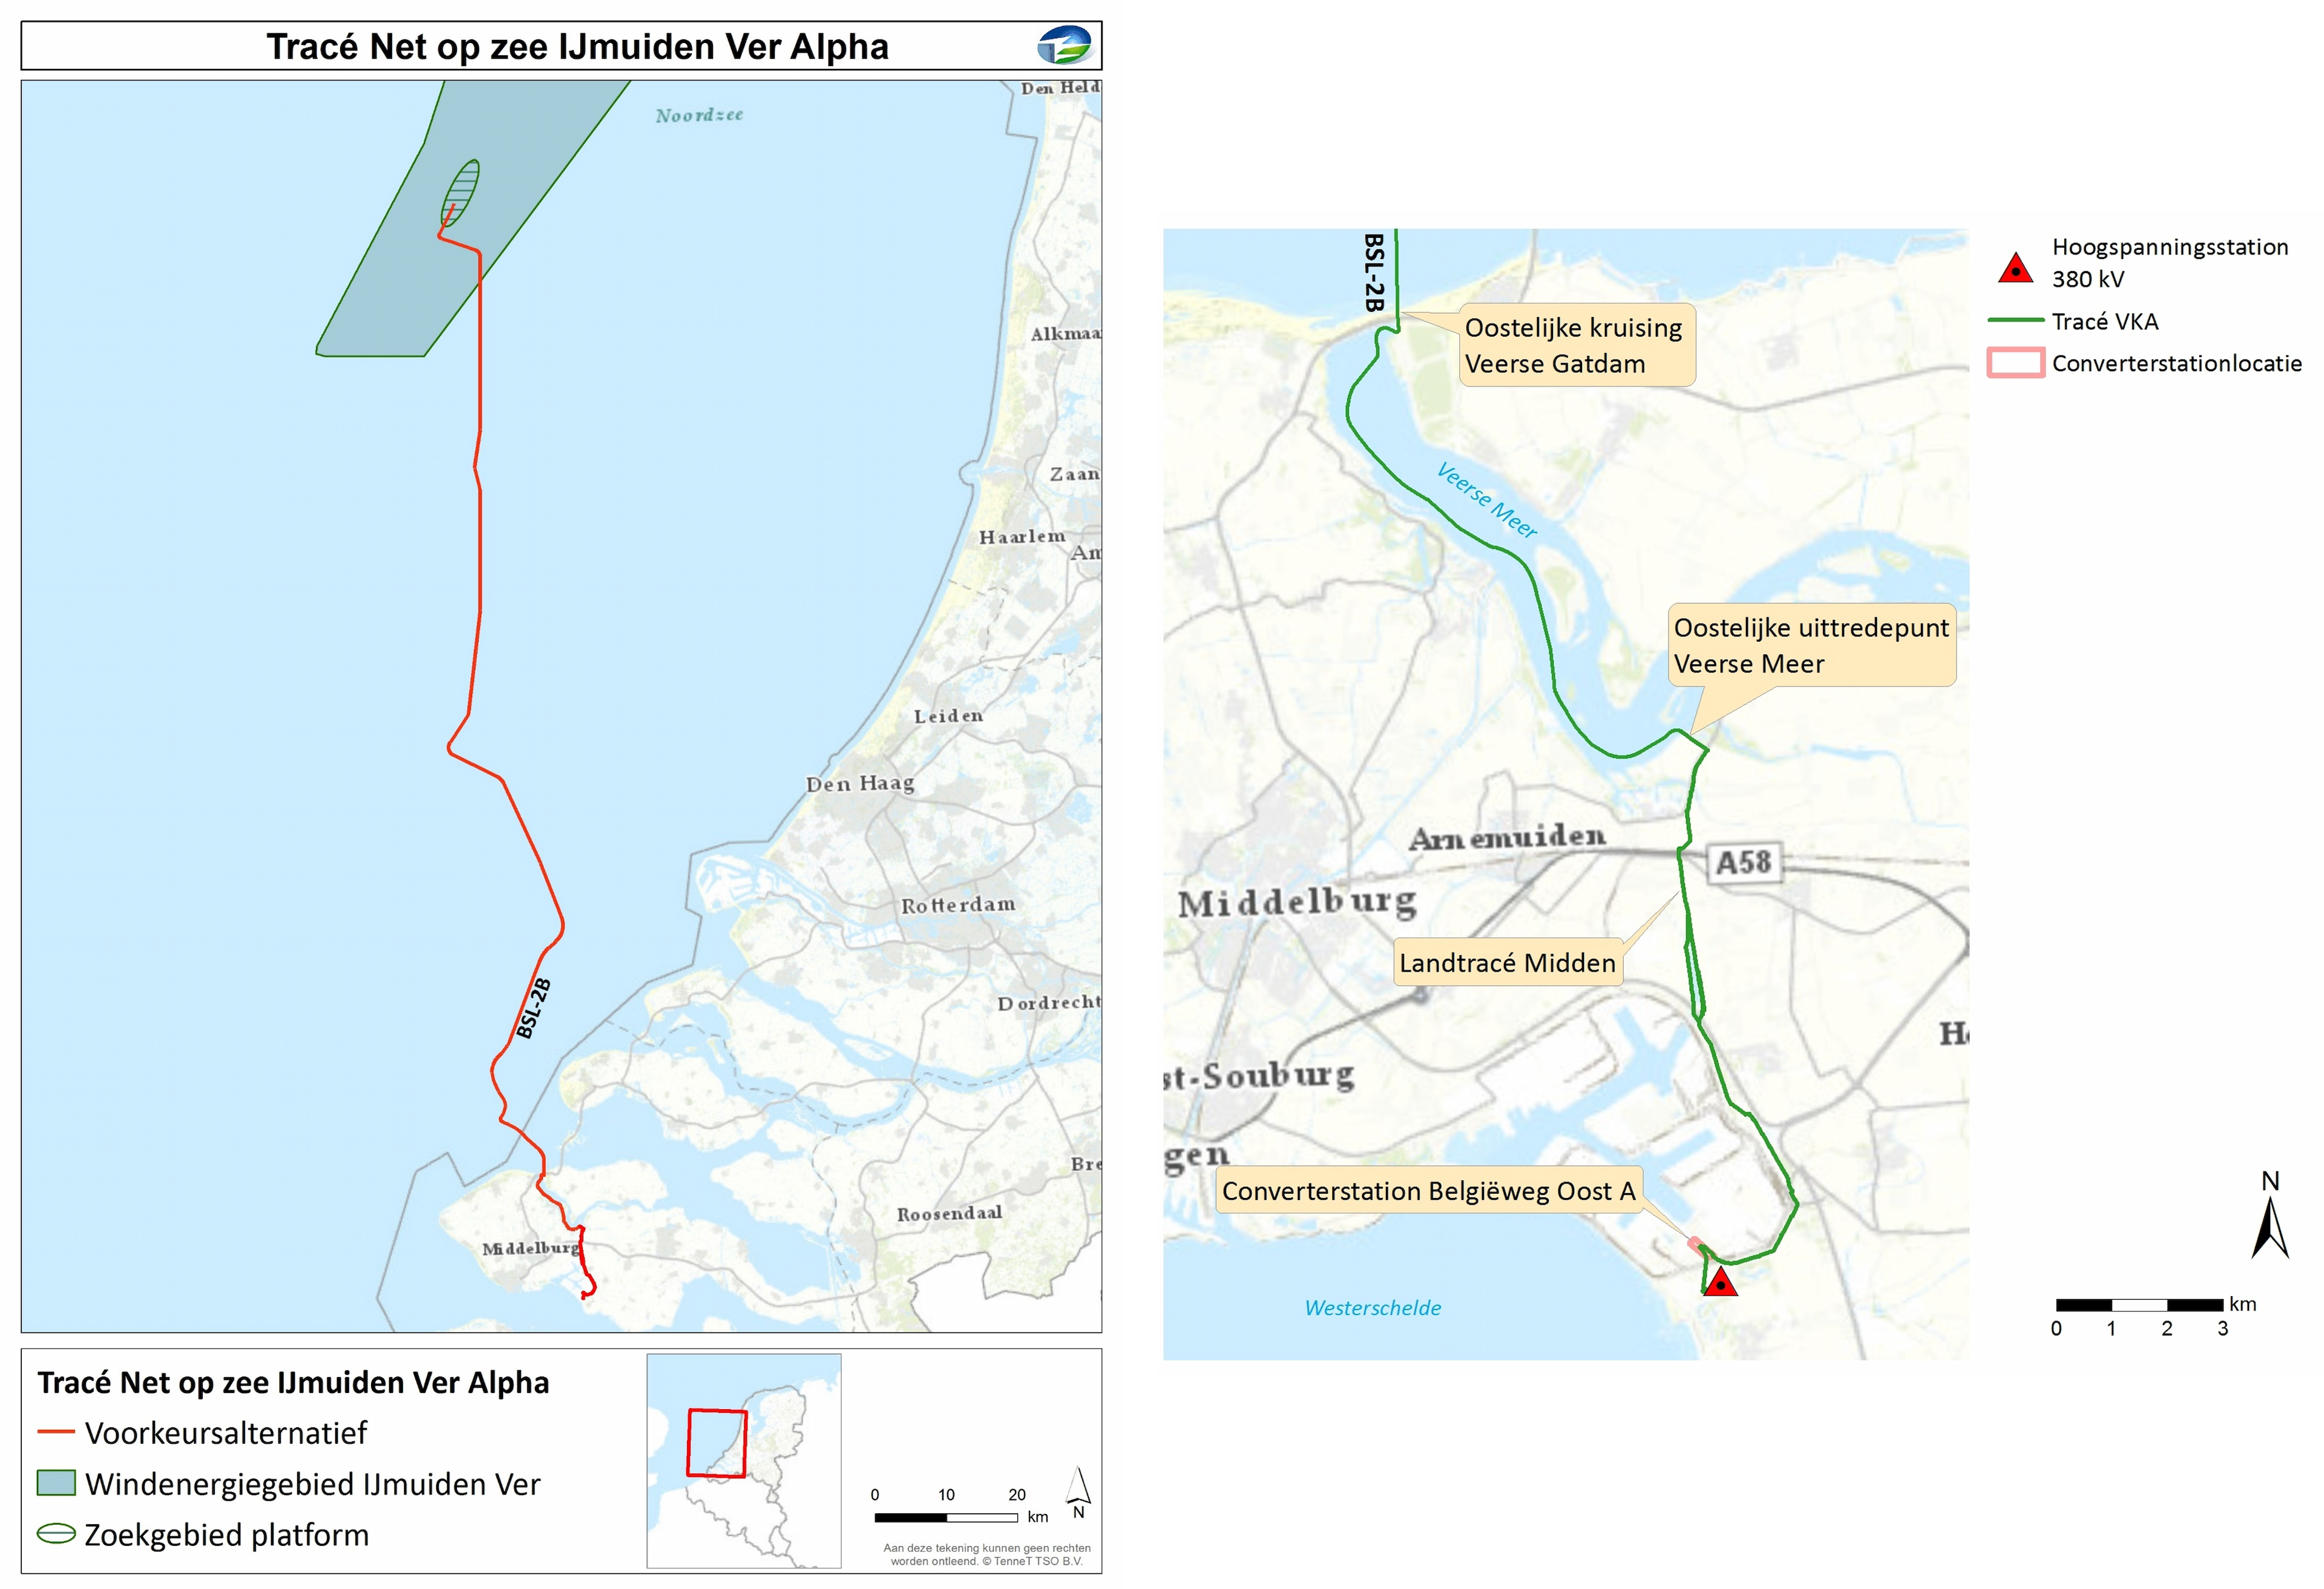 Verbeelding voorkeursalternatief - Net op zee IJmuiden Ver A